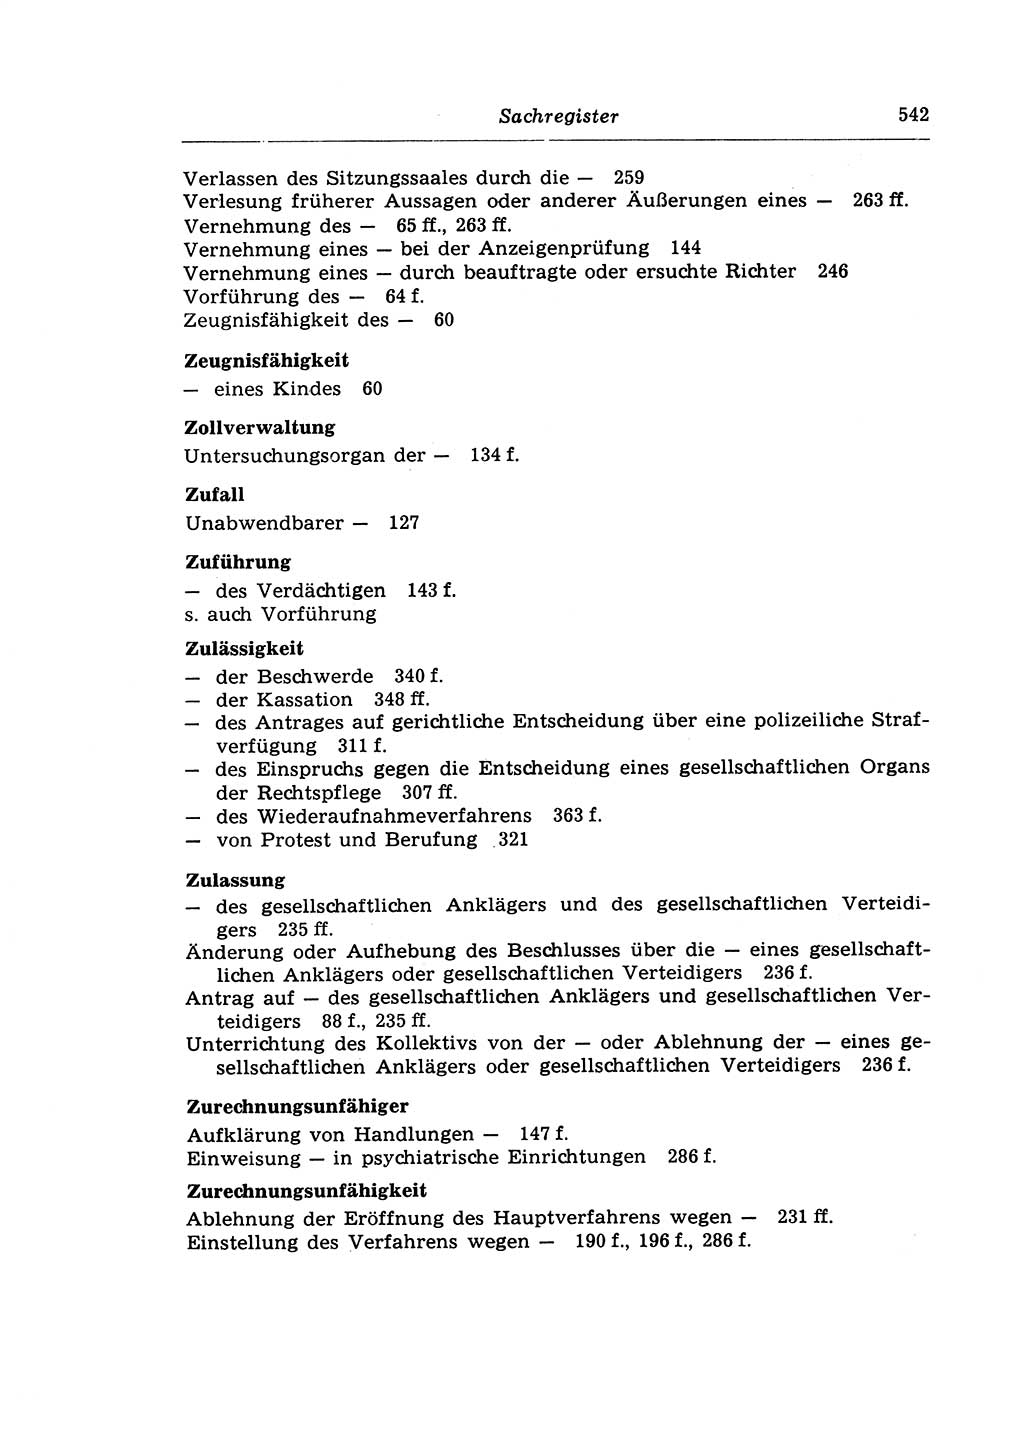 Strafprozeßrecht der DDR (Deutsche Demokratische Republik), Lehrkommentar zur Strafprozeßordnung (StPO) 1968, Seite 542 (Strafprozeßr. DDR Lehrkomm. StPO 19688, S. 542)